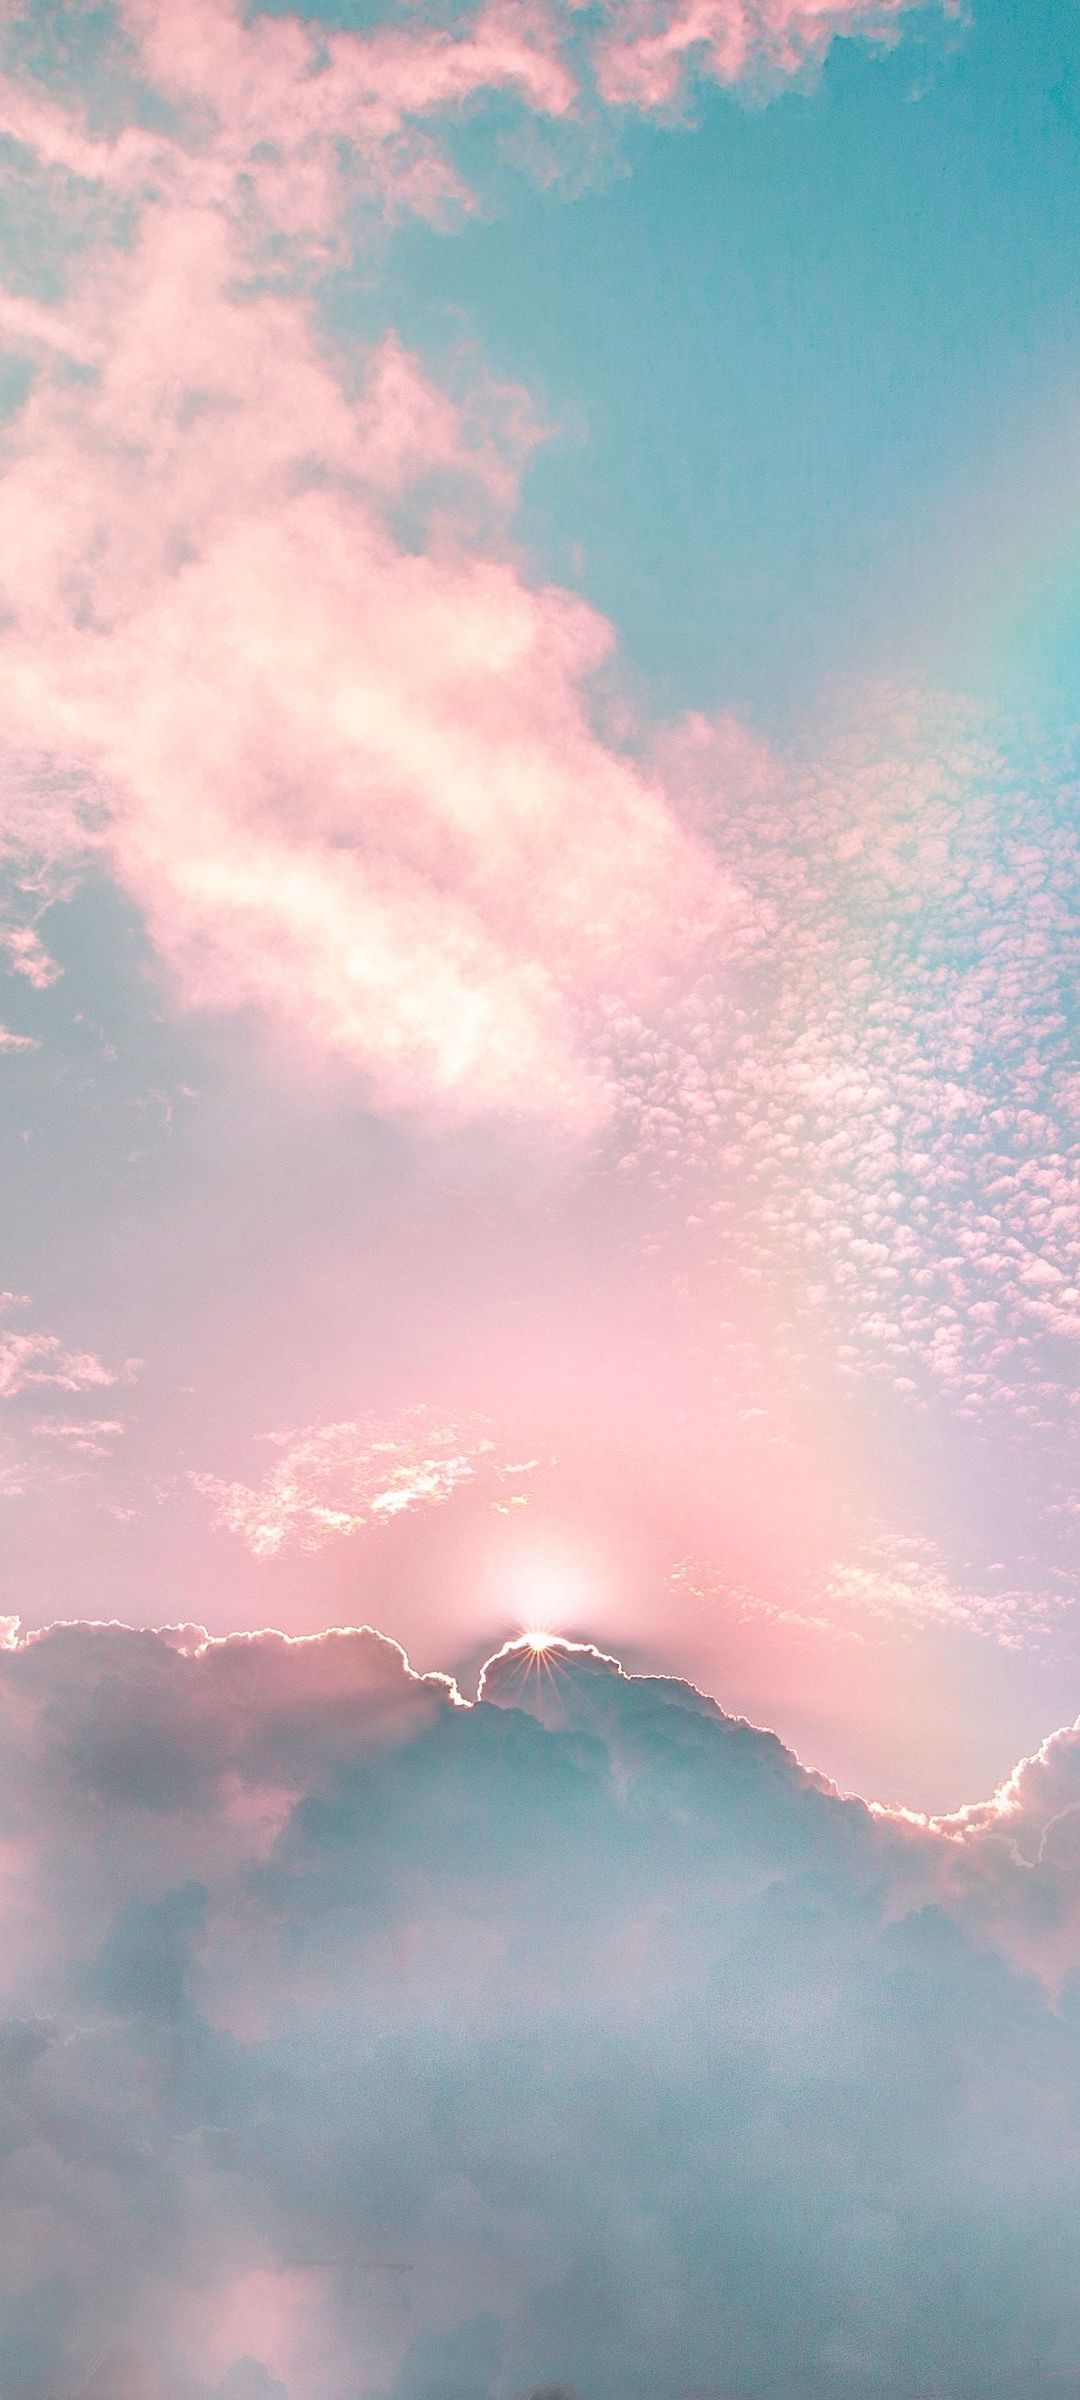 綺麗な空 虹 雲 Mi 10 Lite 5g Androidスマホ壁紙 待ち受け スマラン